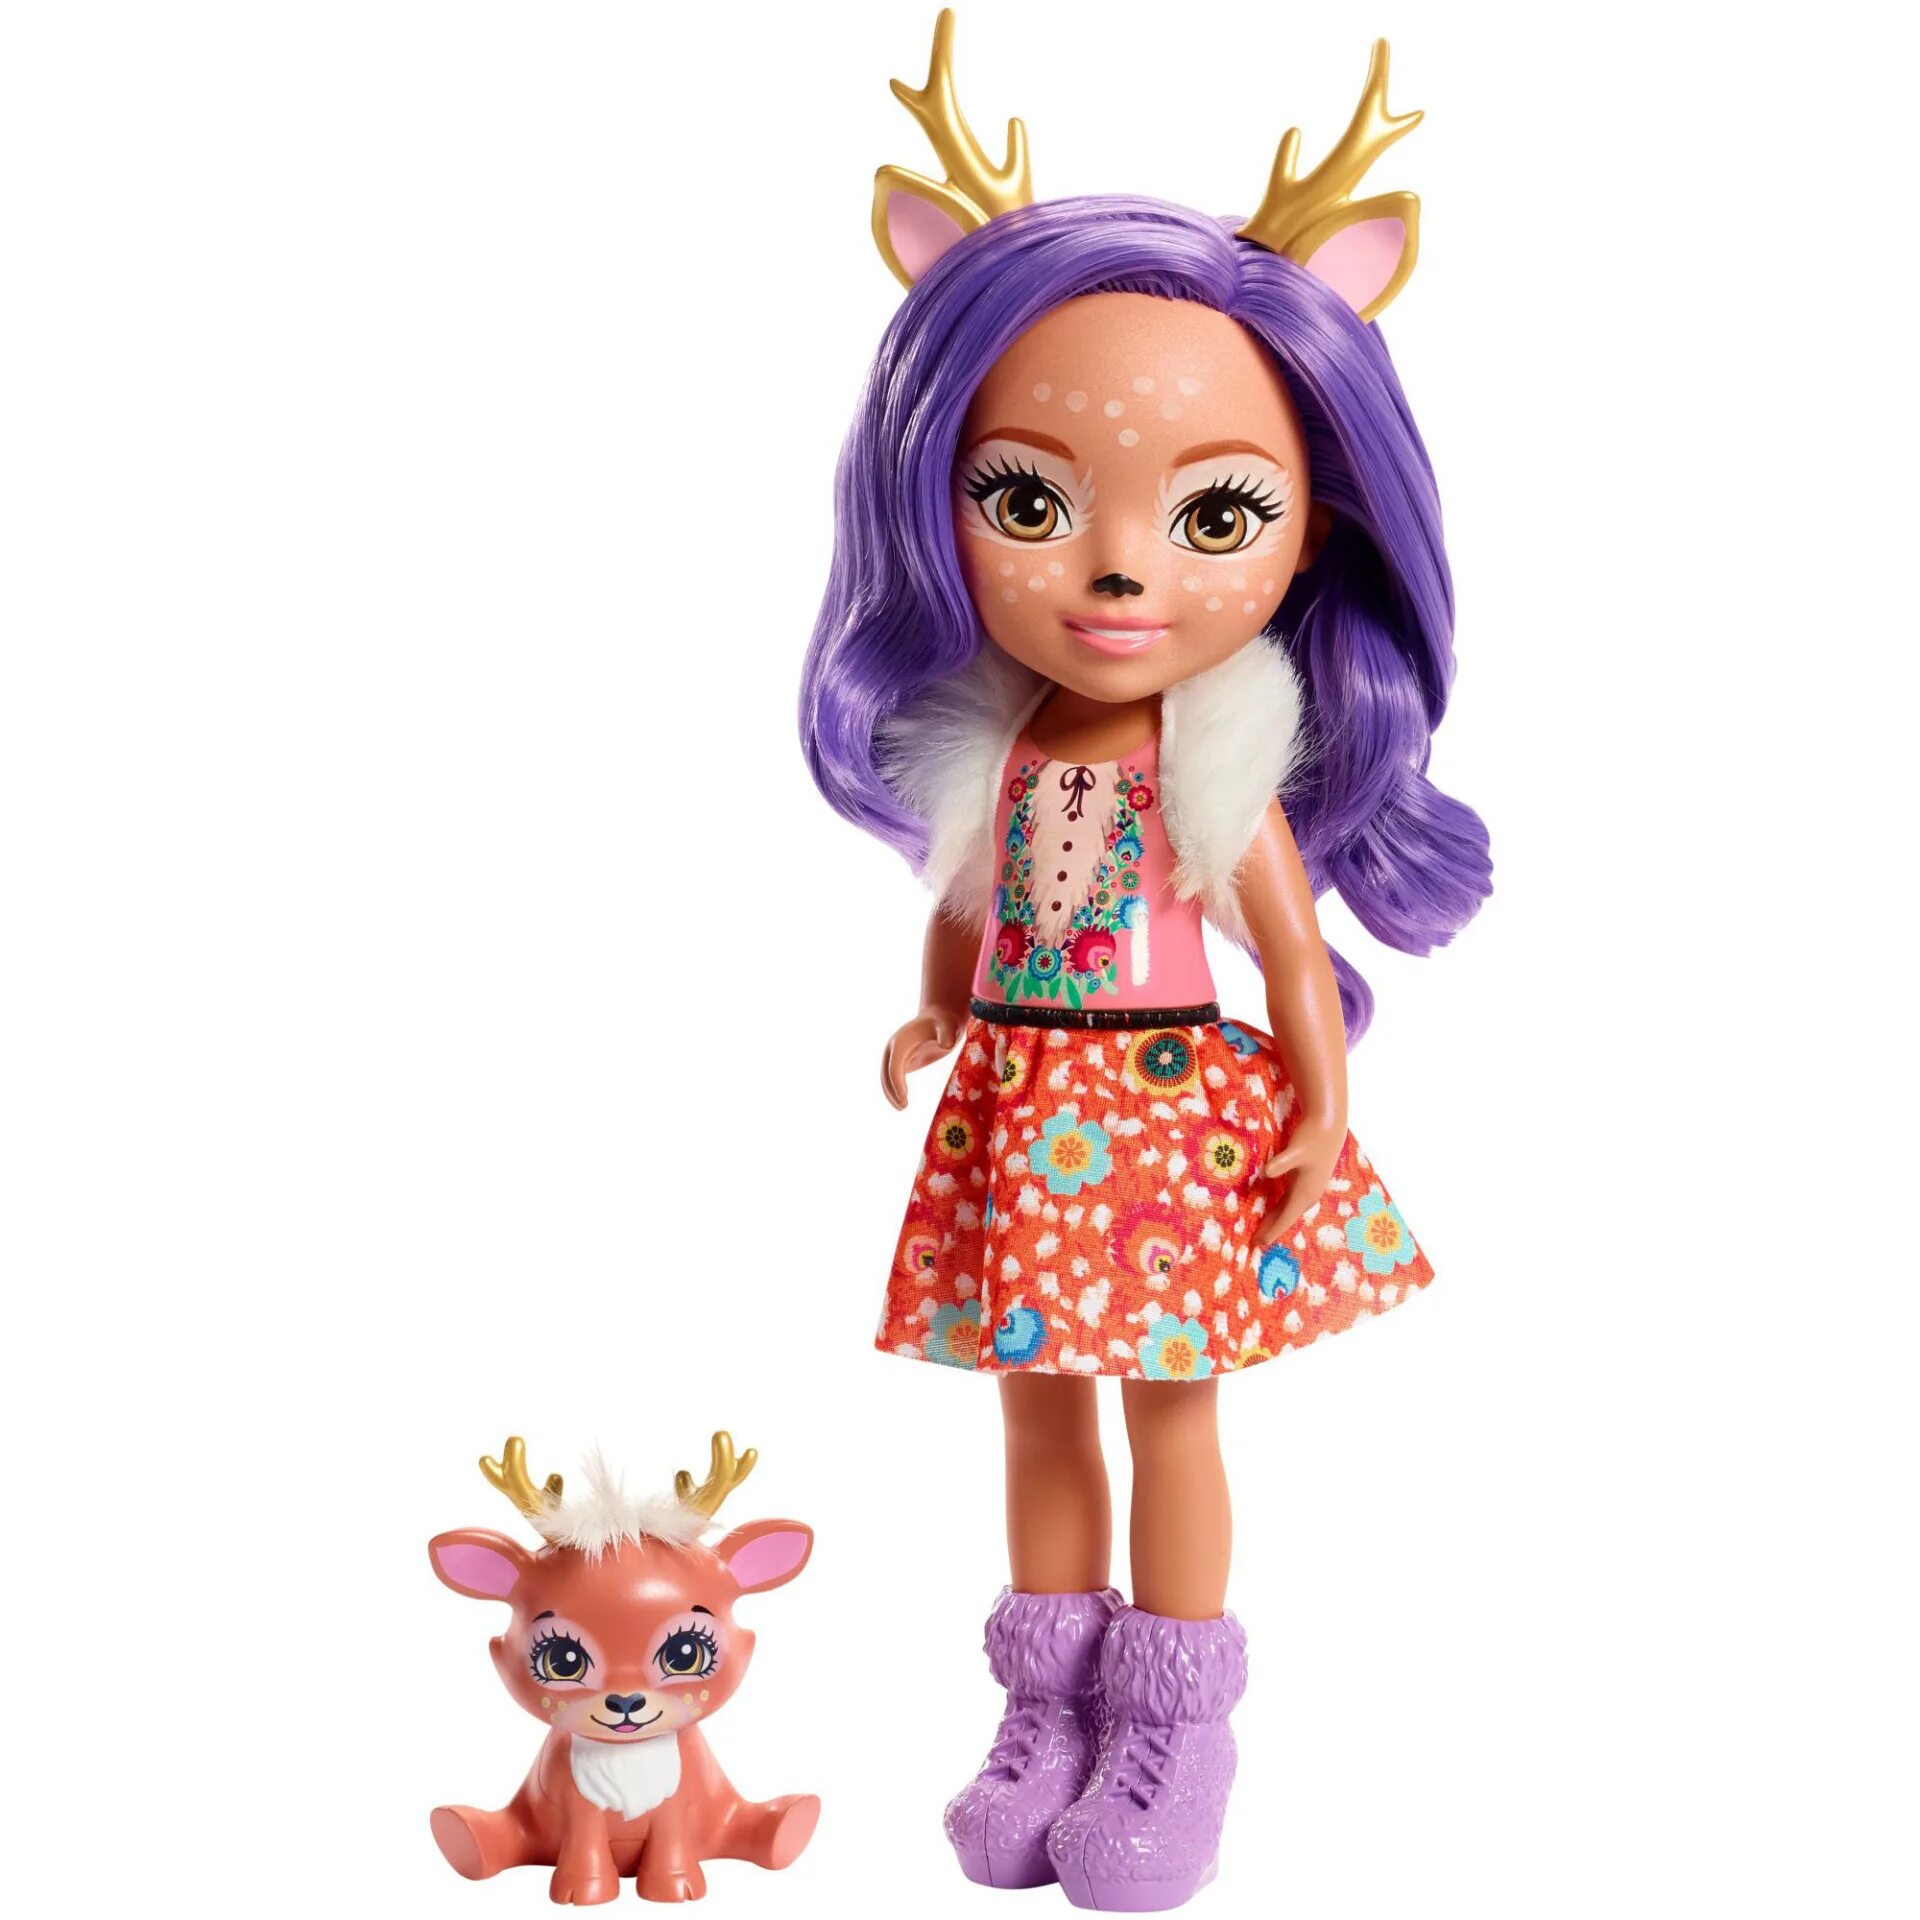 Энченчималс. Mattel куклы Энчантималс. Enchantimals кукла Danessa Deer. Кукла Энчантималс большая 31 см. Кукла Данесса и спринт.